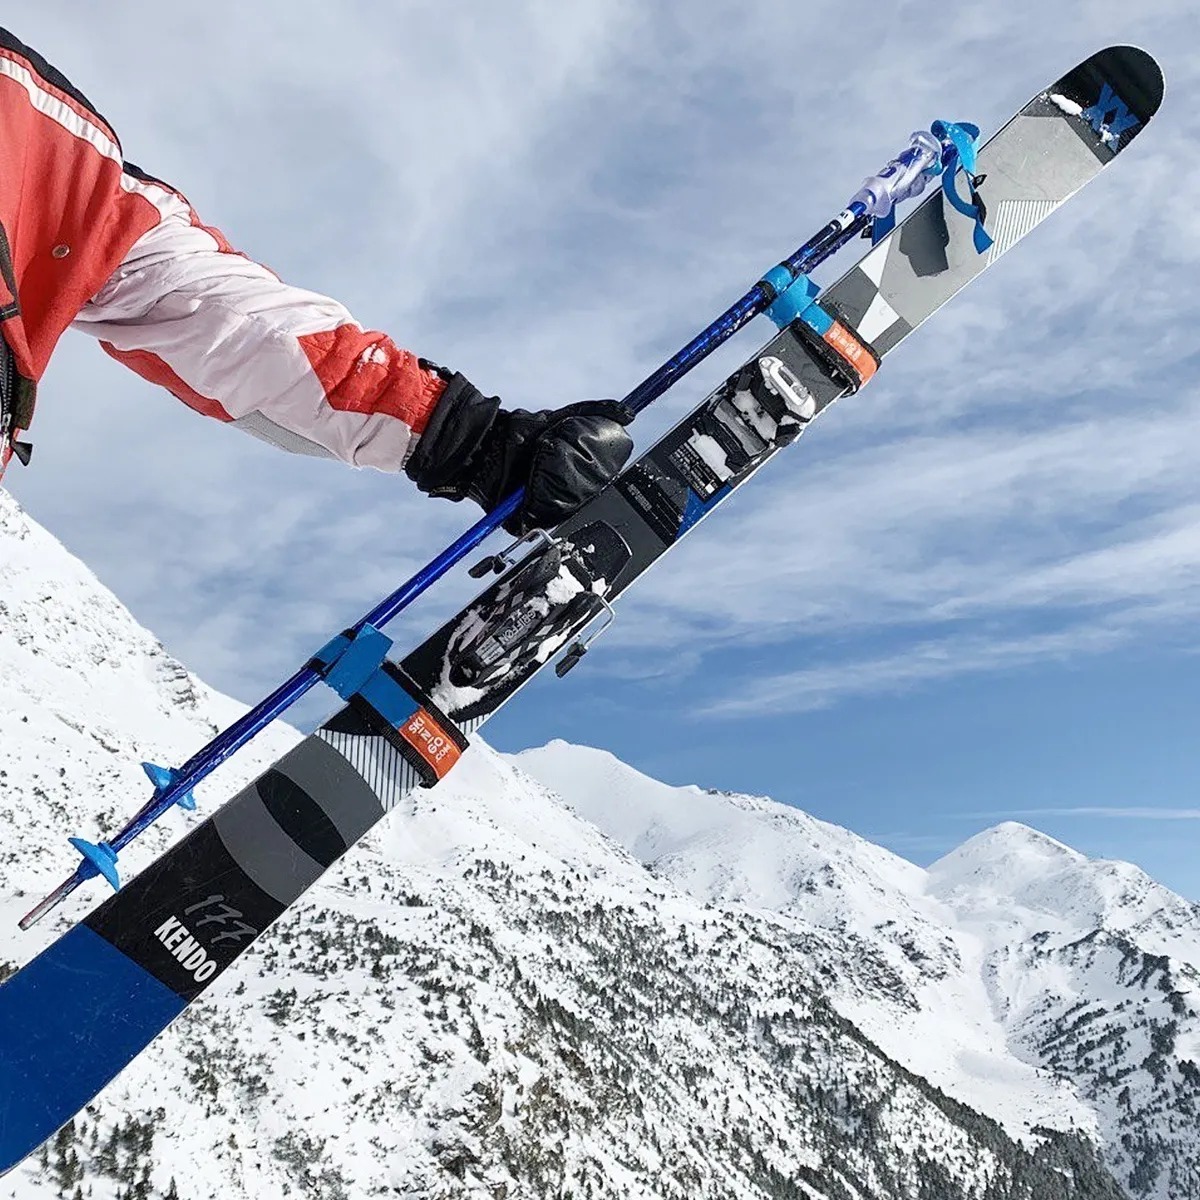 Приспособление для переноски лыж и лыжных палок SKI-N-GO Blue 60-95 M